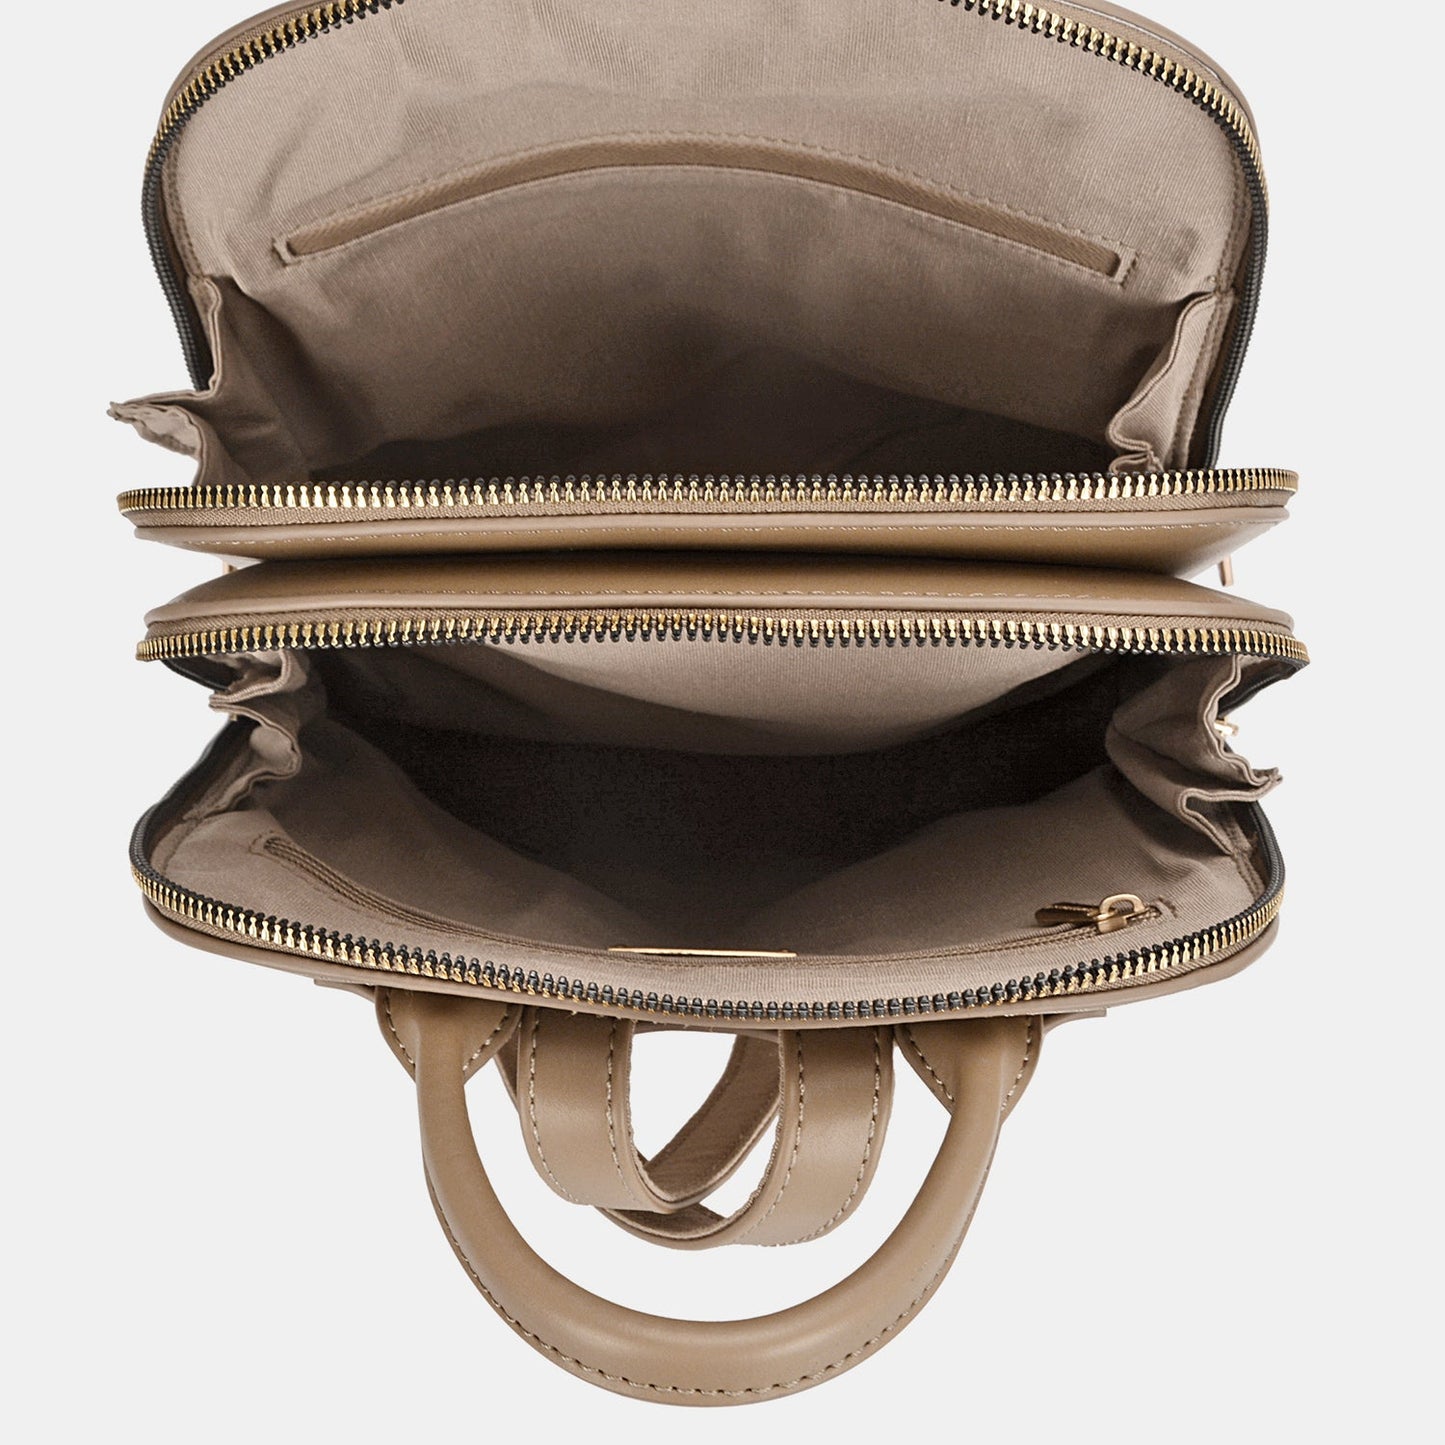 Vegan Leather Leather Adjustable Straps Backpack BagBackpackDavid Jones